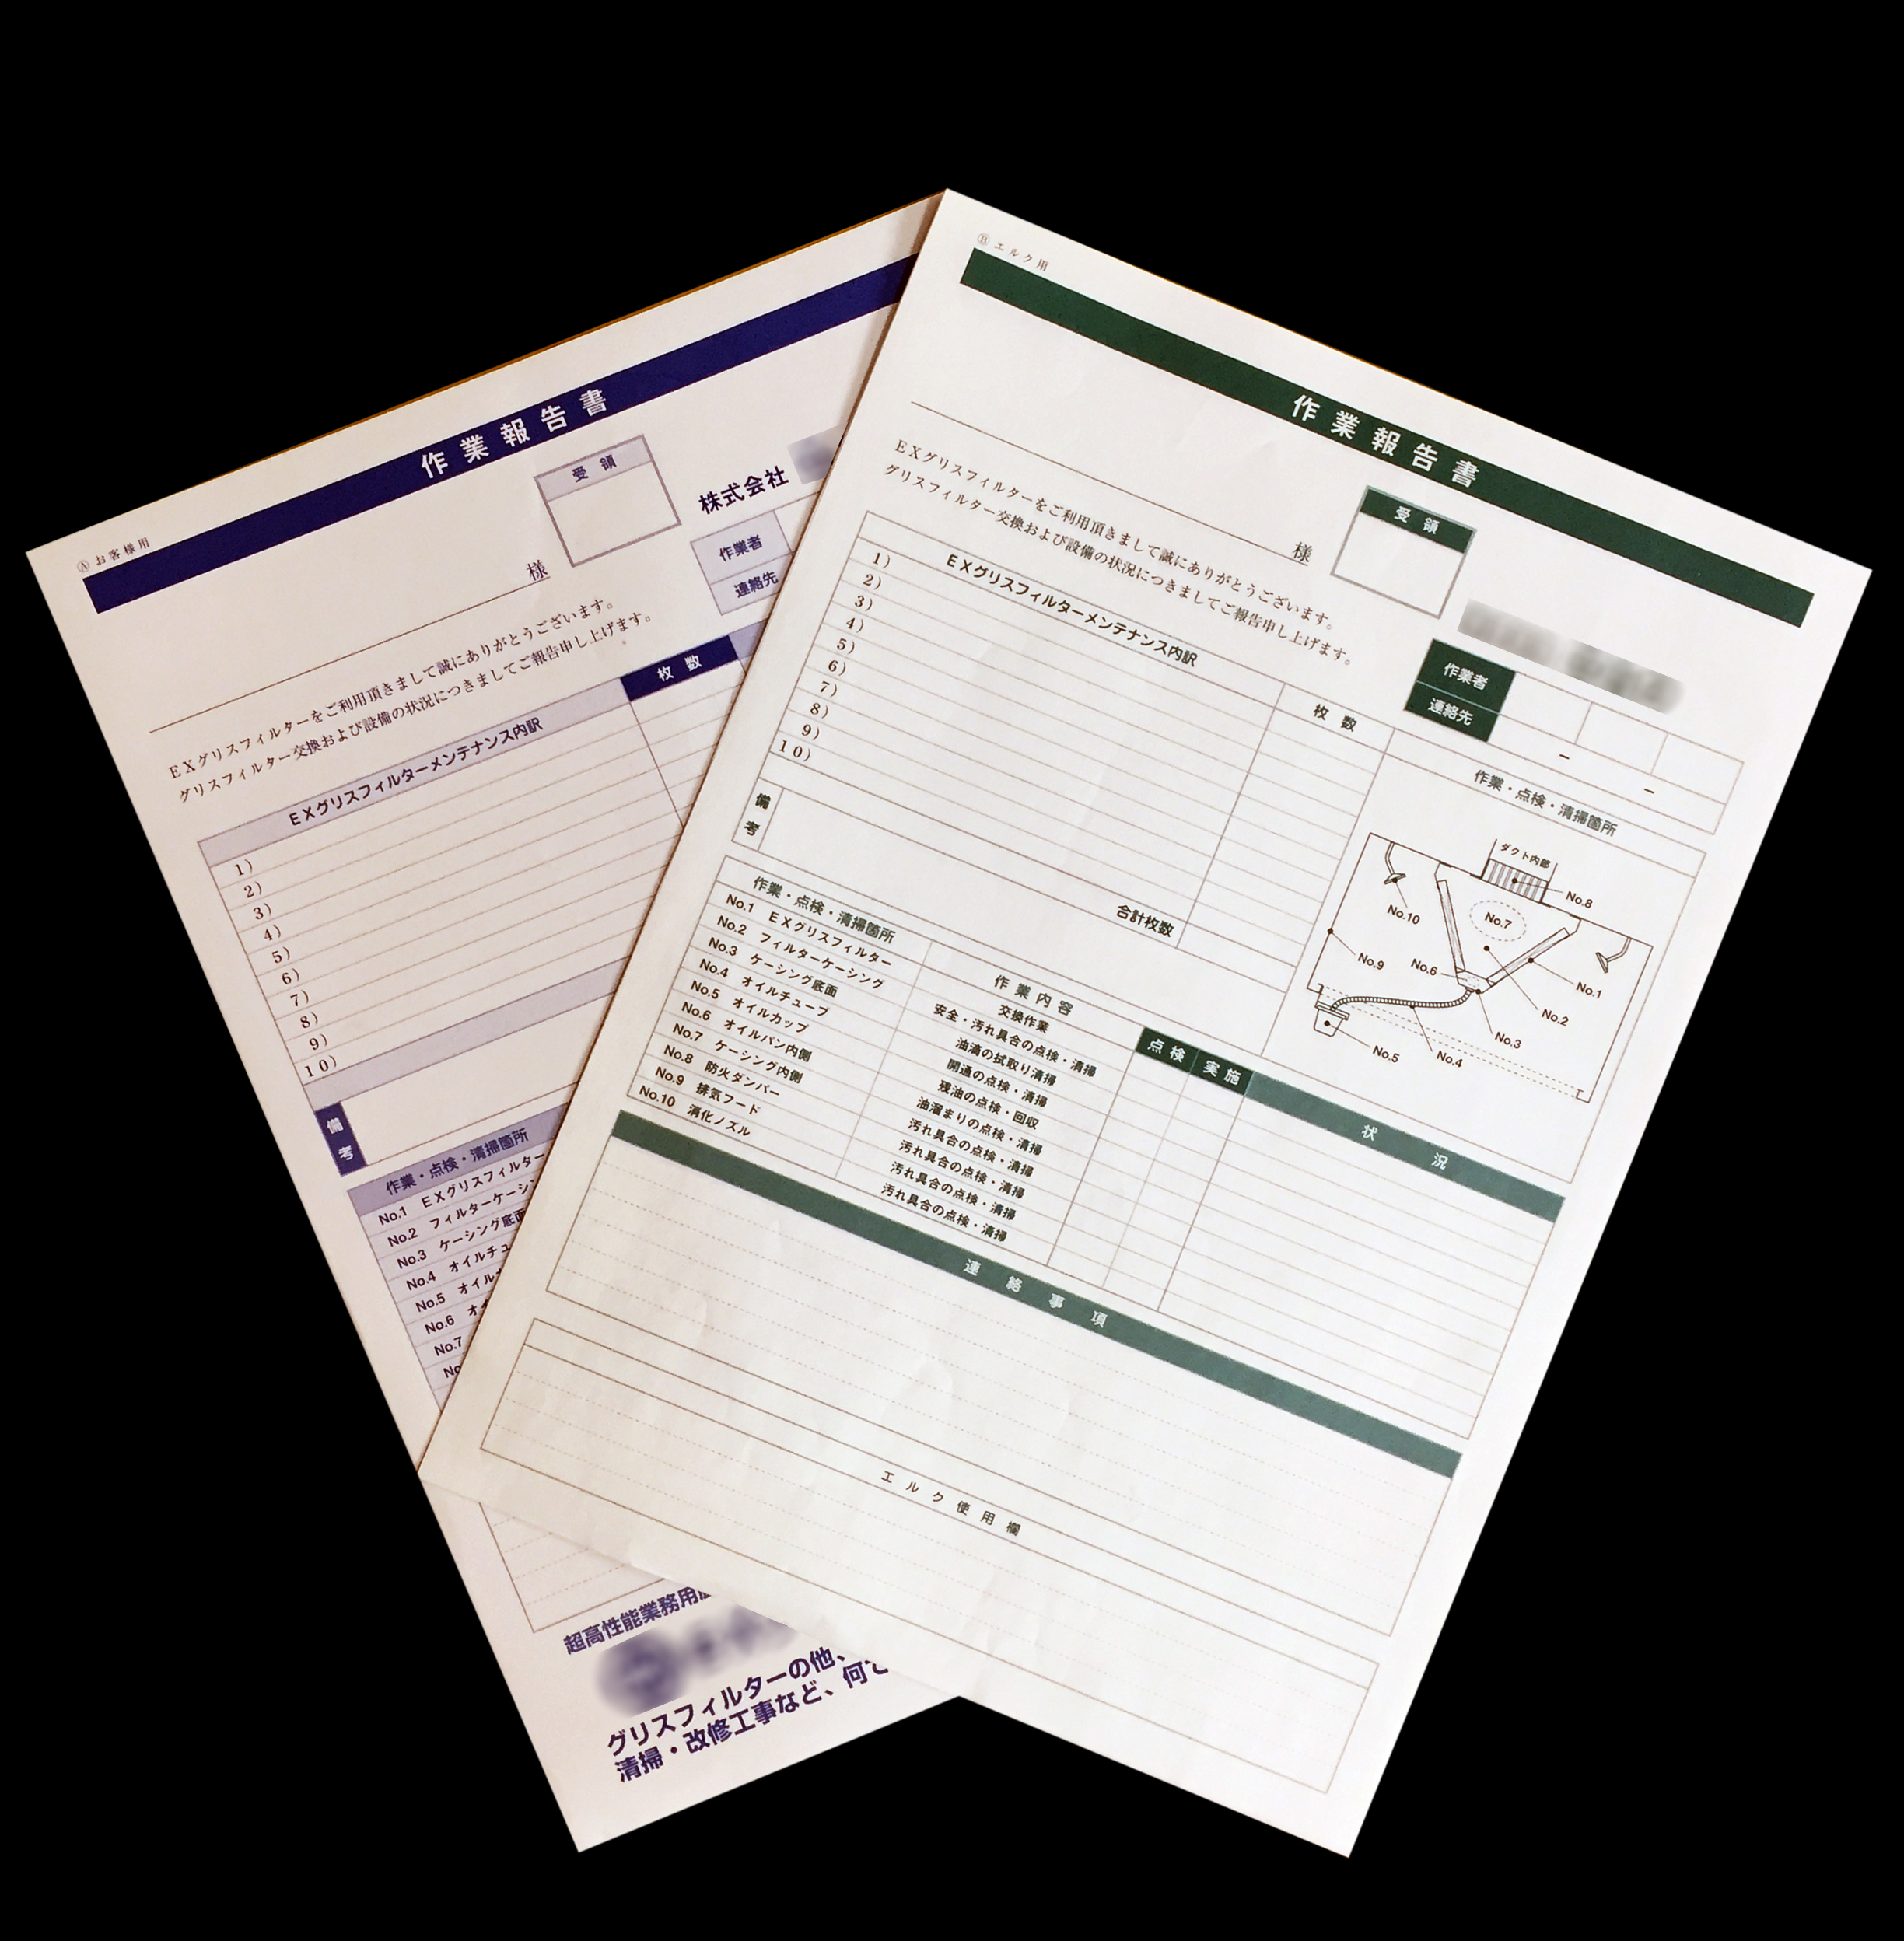 空調整備業で使用する作業報告書(２枚複写)の伝票作成実績